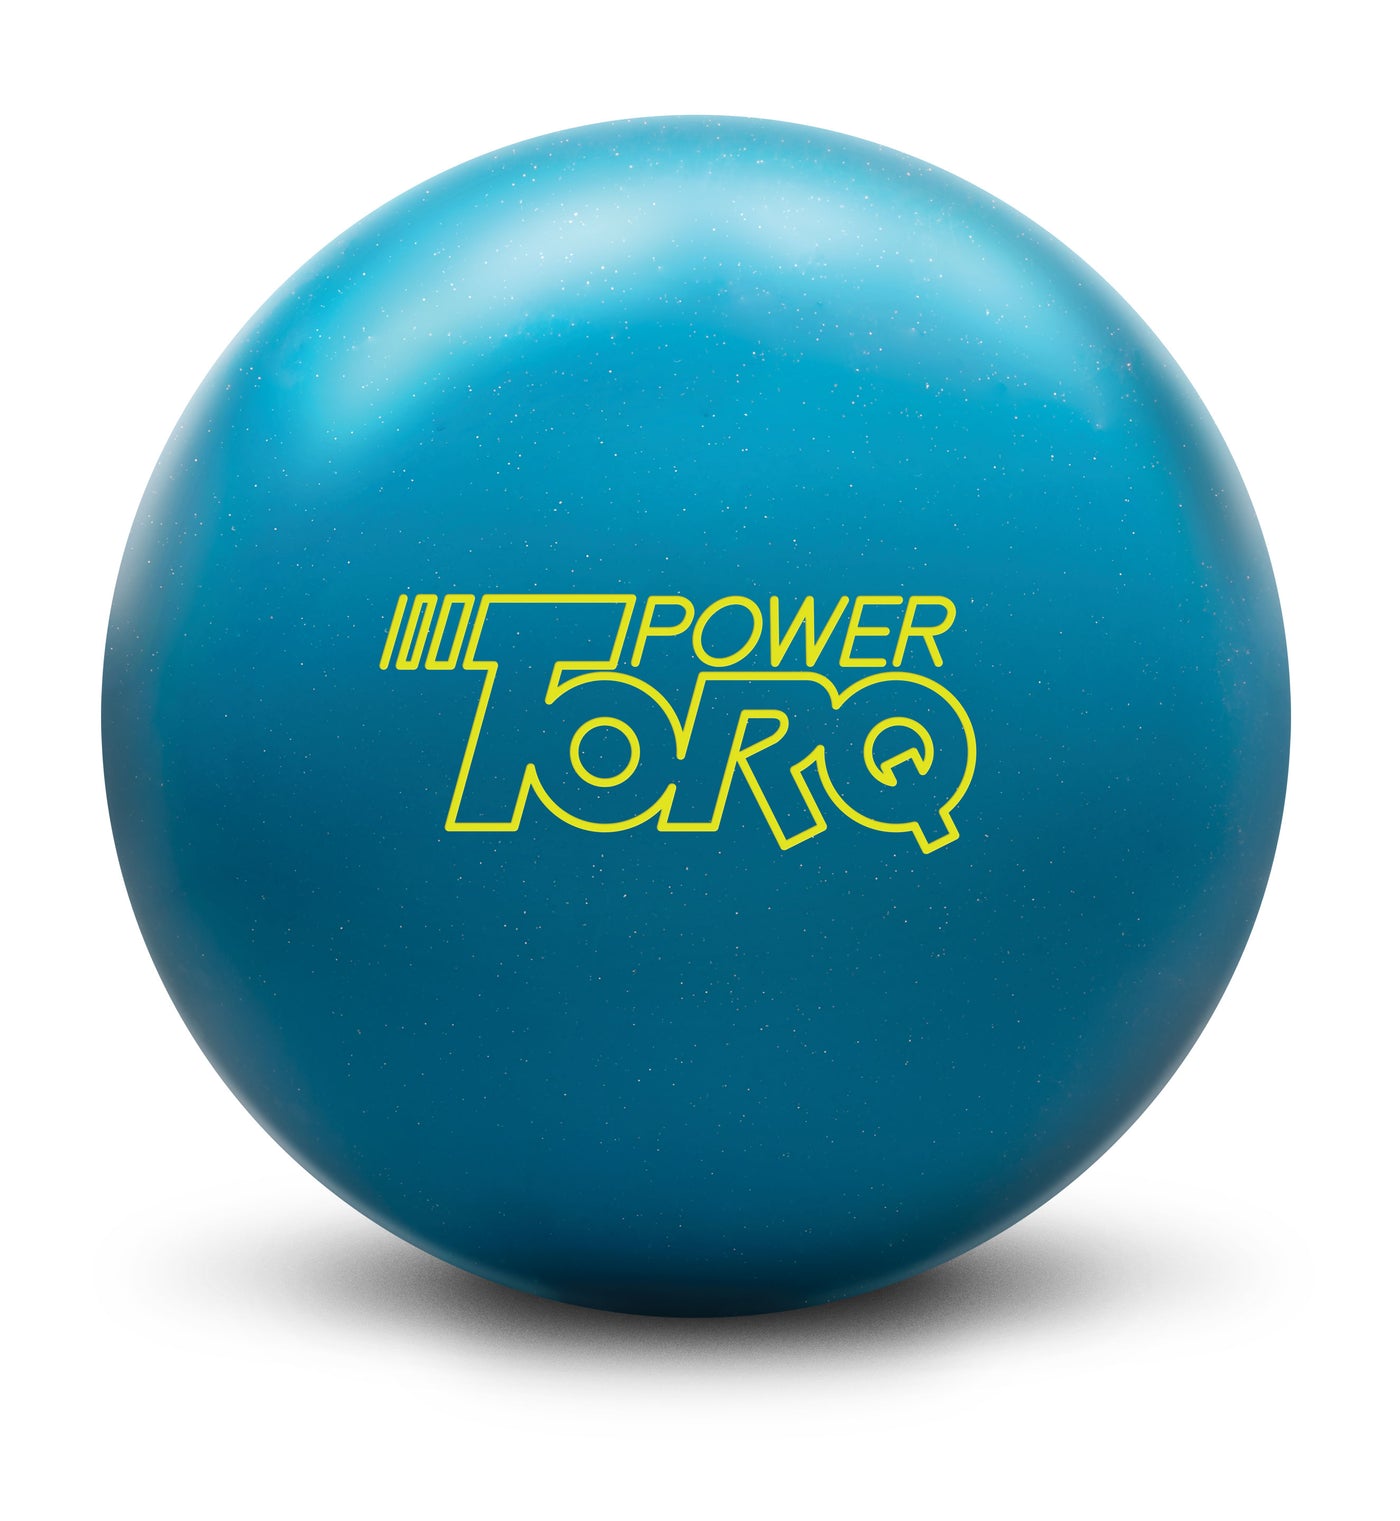 Power Torq Bowling Ball